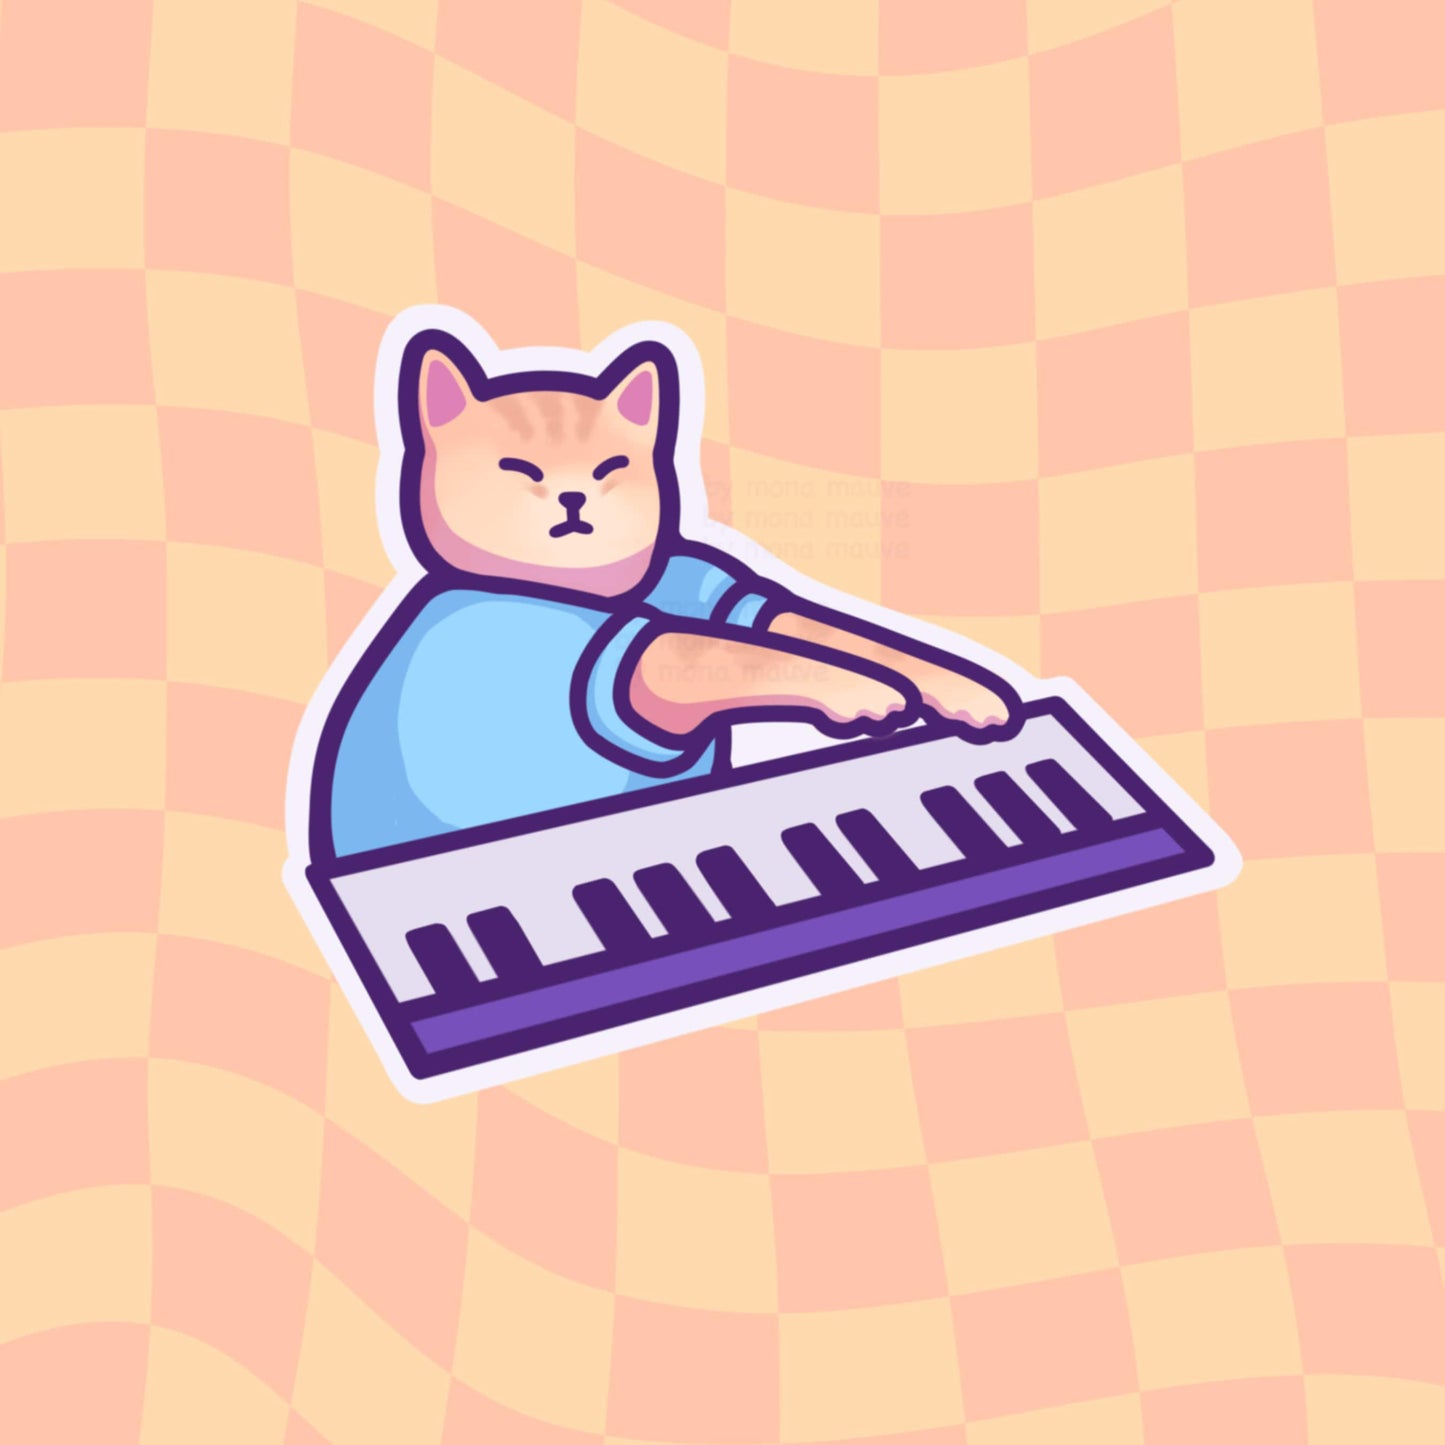 Keyboard Cat Meme Vinyl Sticker | Cute Cat Meme | Kawaii Waterproof Sticker for Water Bottle, Phone, Laptop, Bumper, Luggage